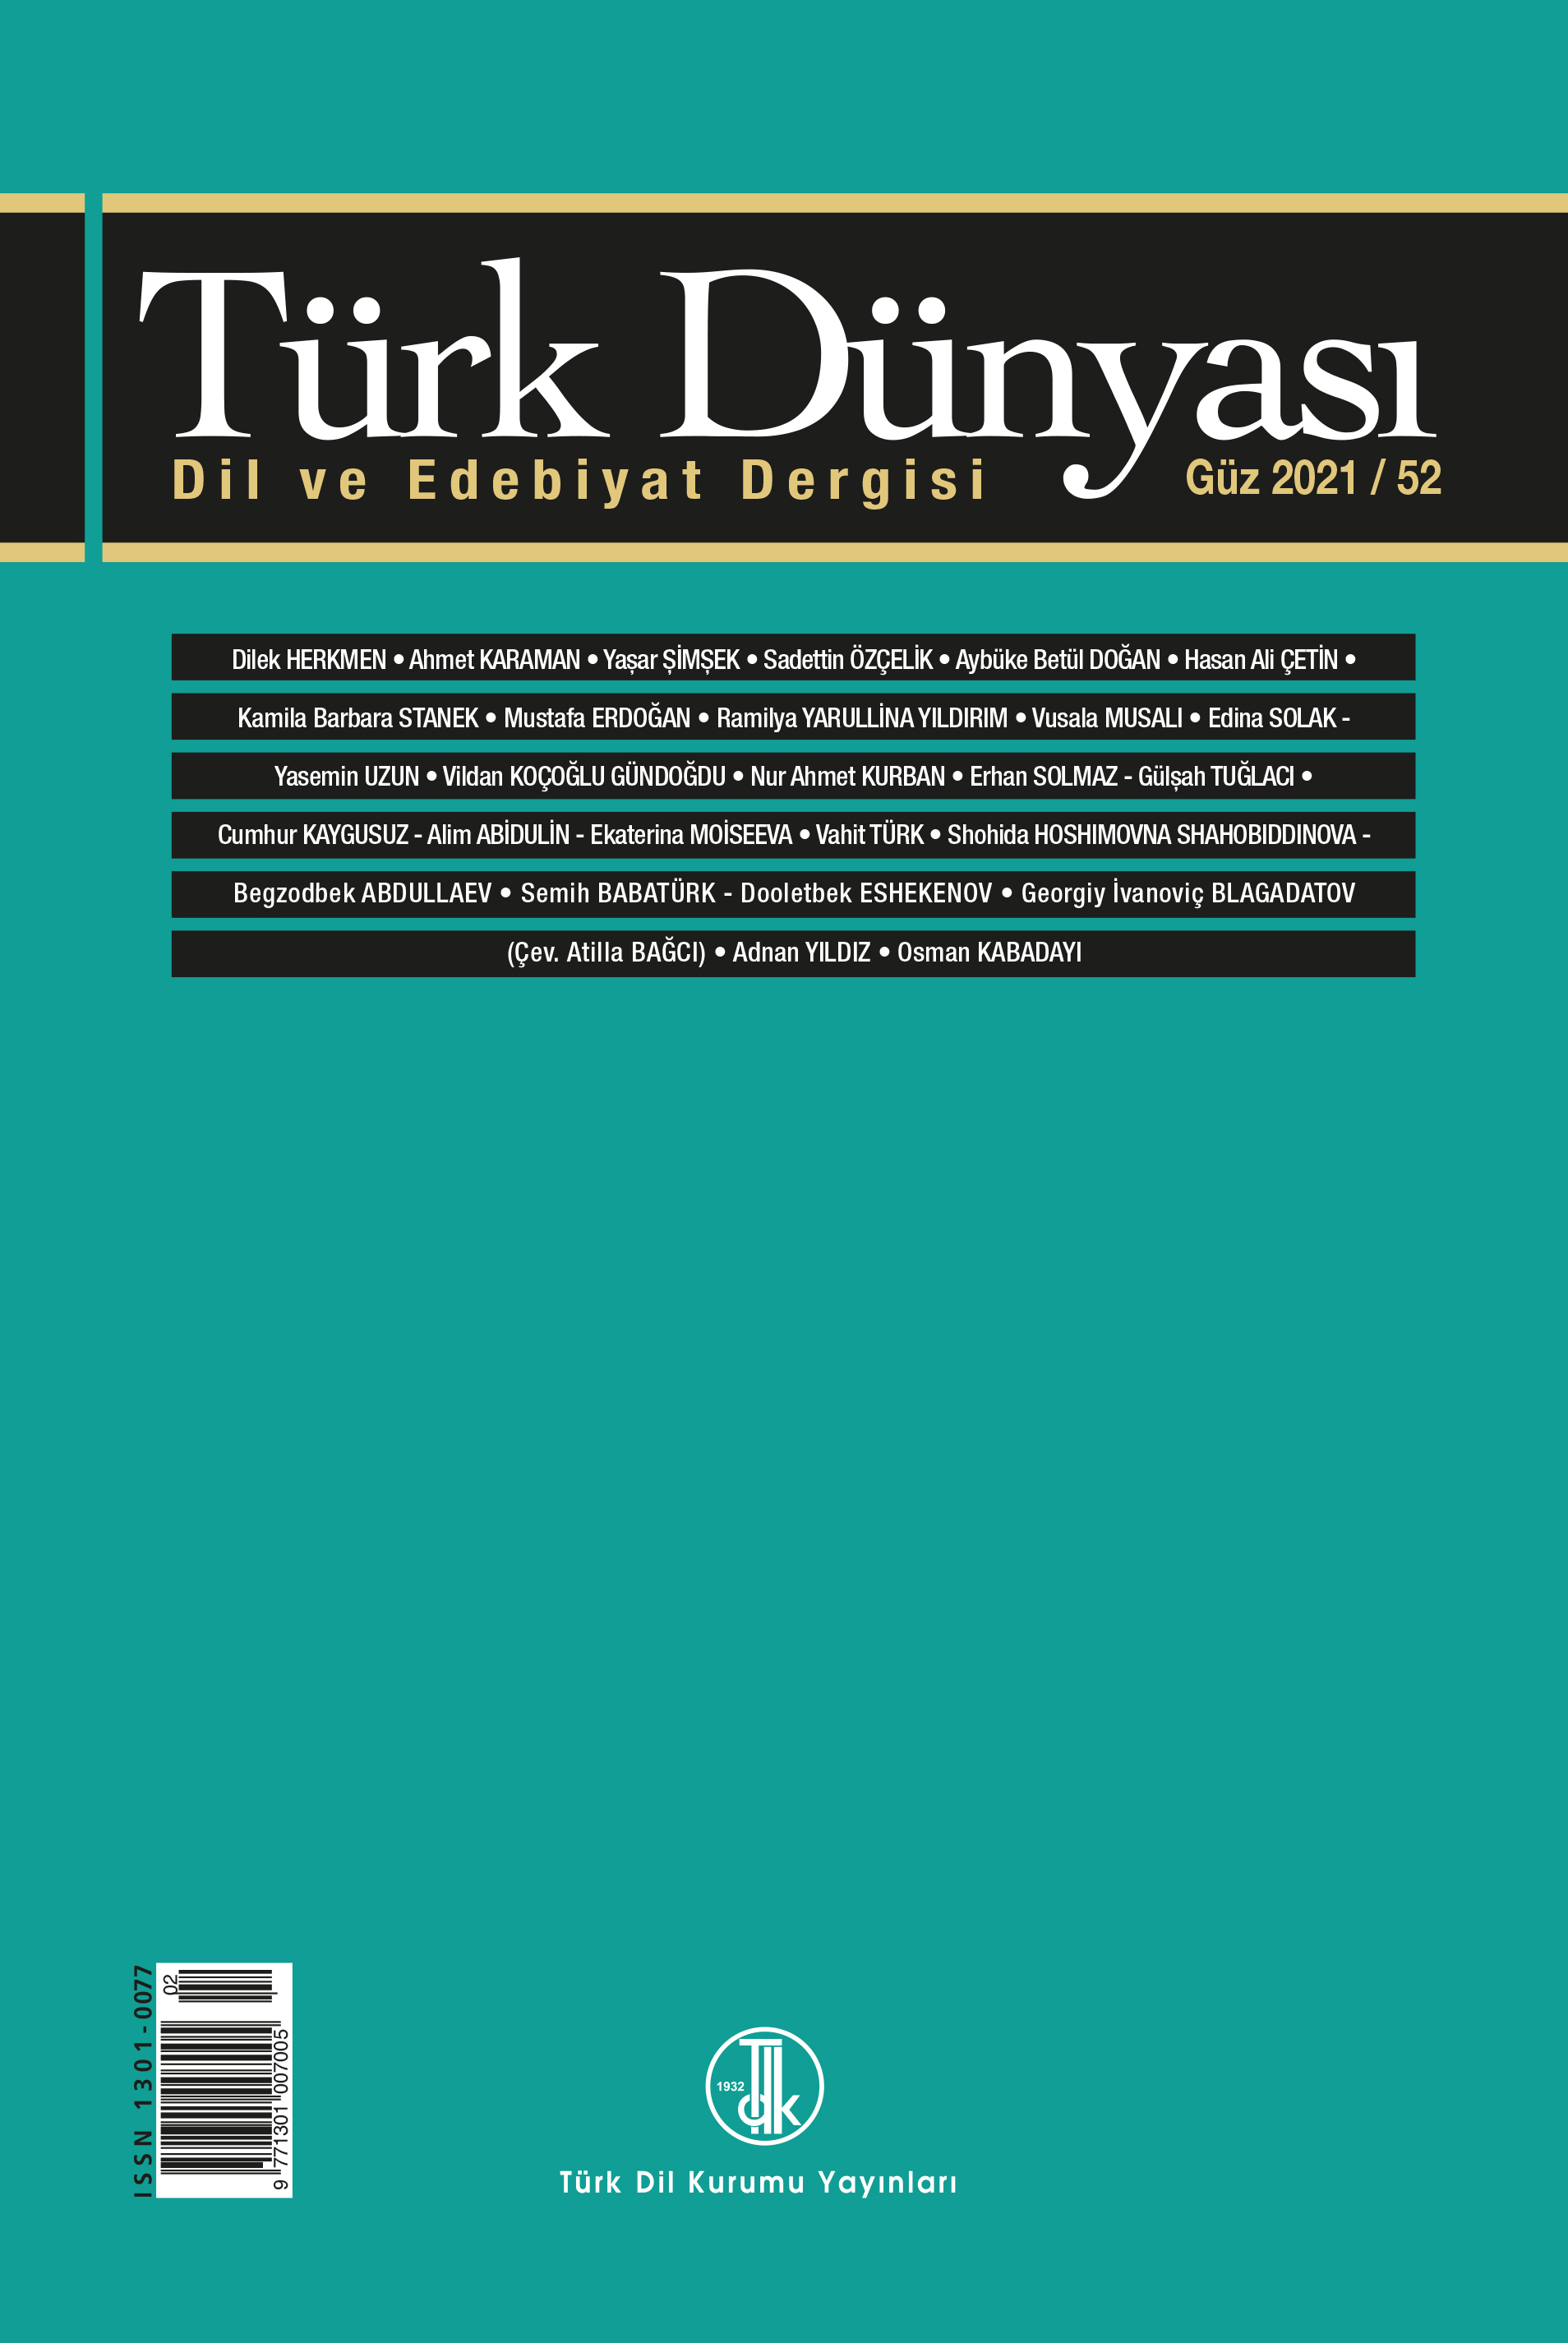 Türk Dünyası Dil ve Edebiyat Dergisi Güz 2021 / 52. sayı, 2021